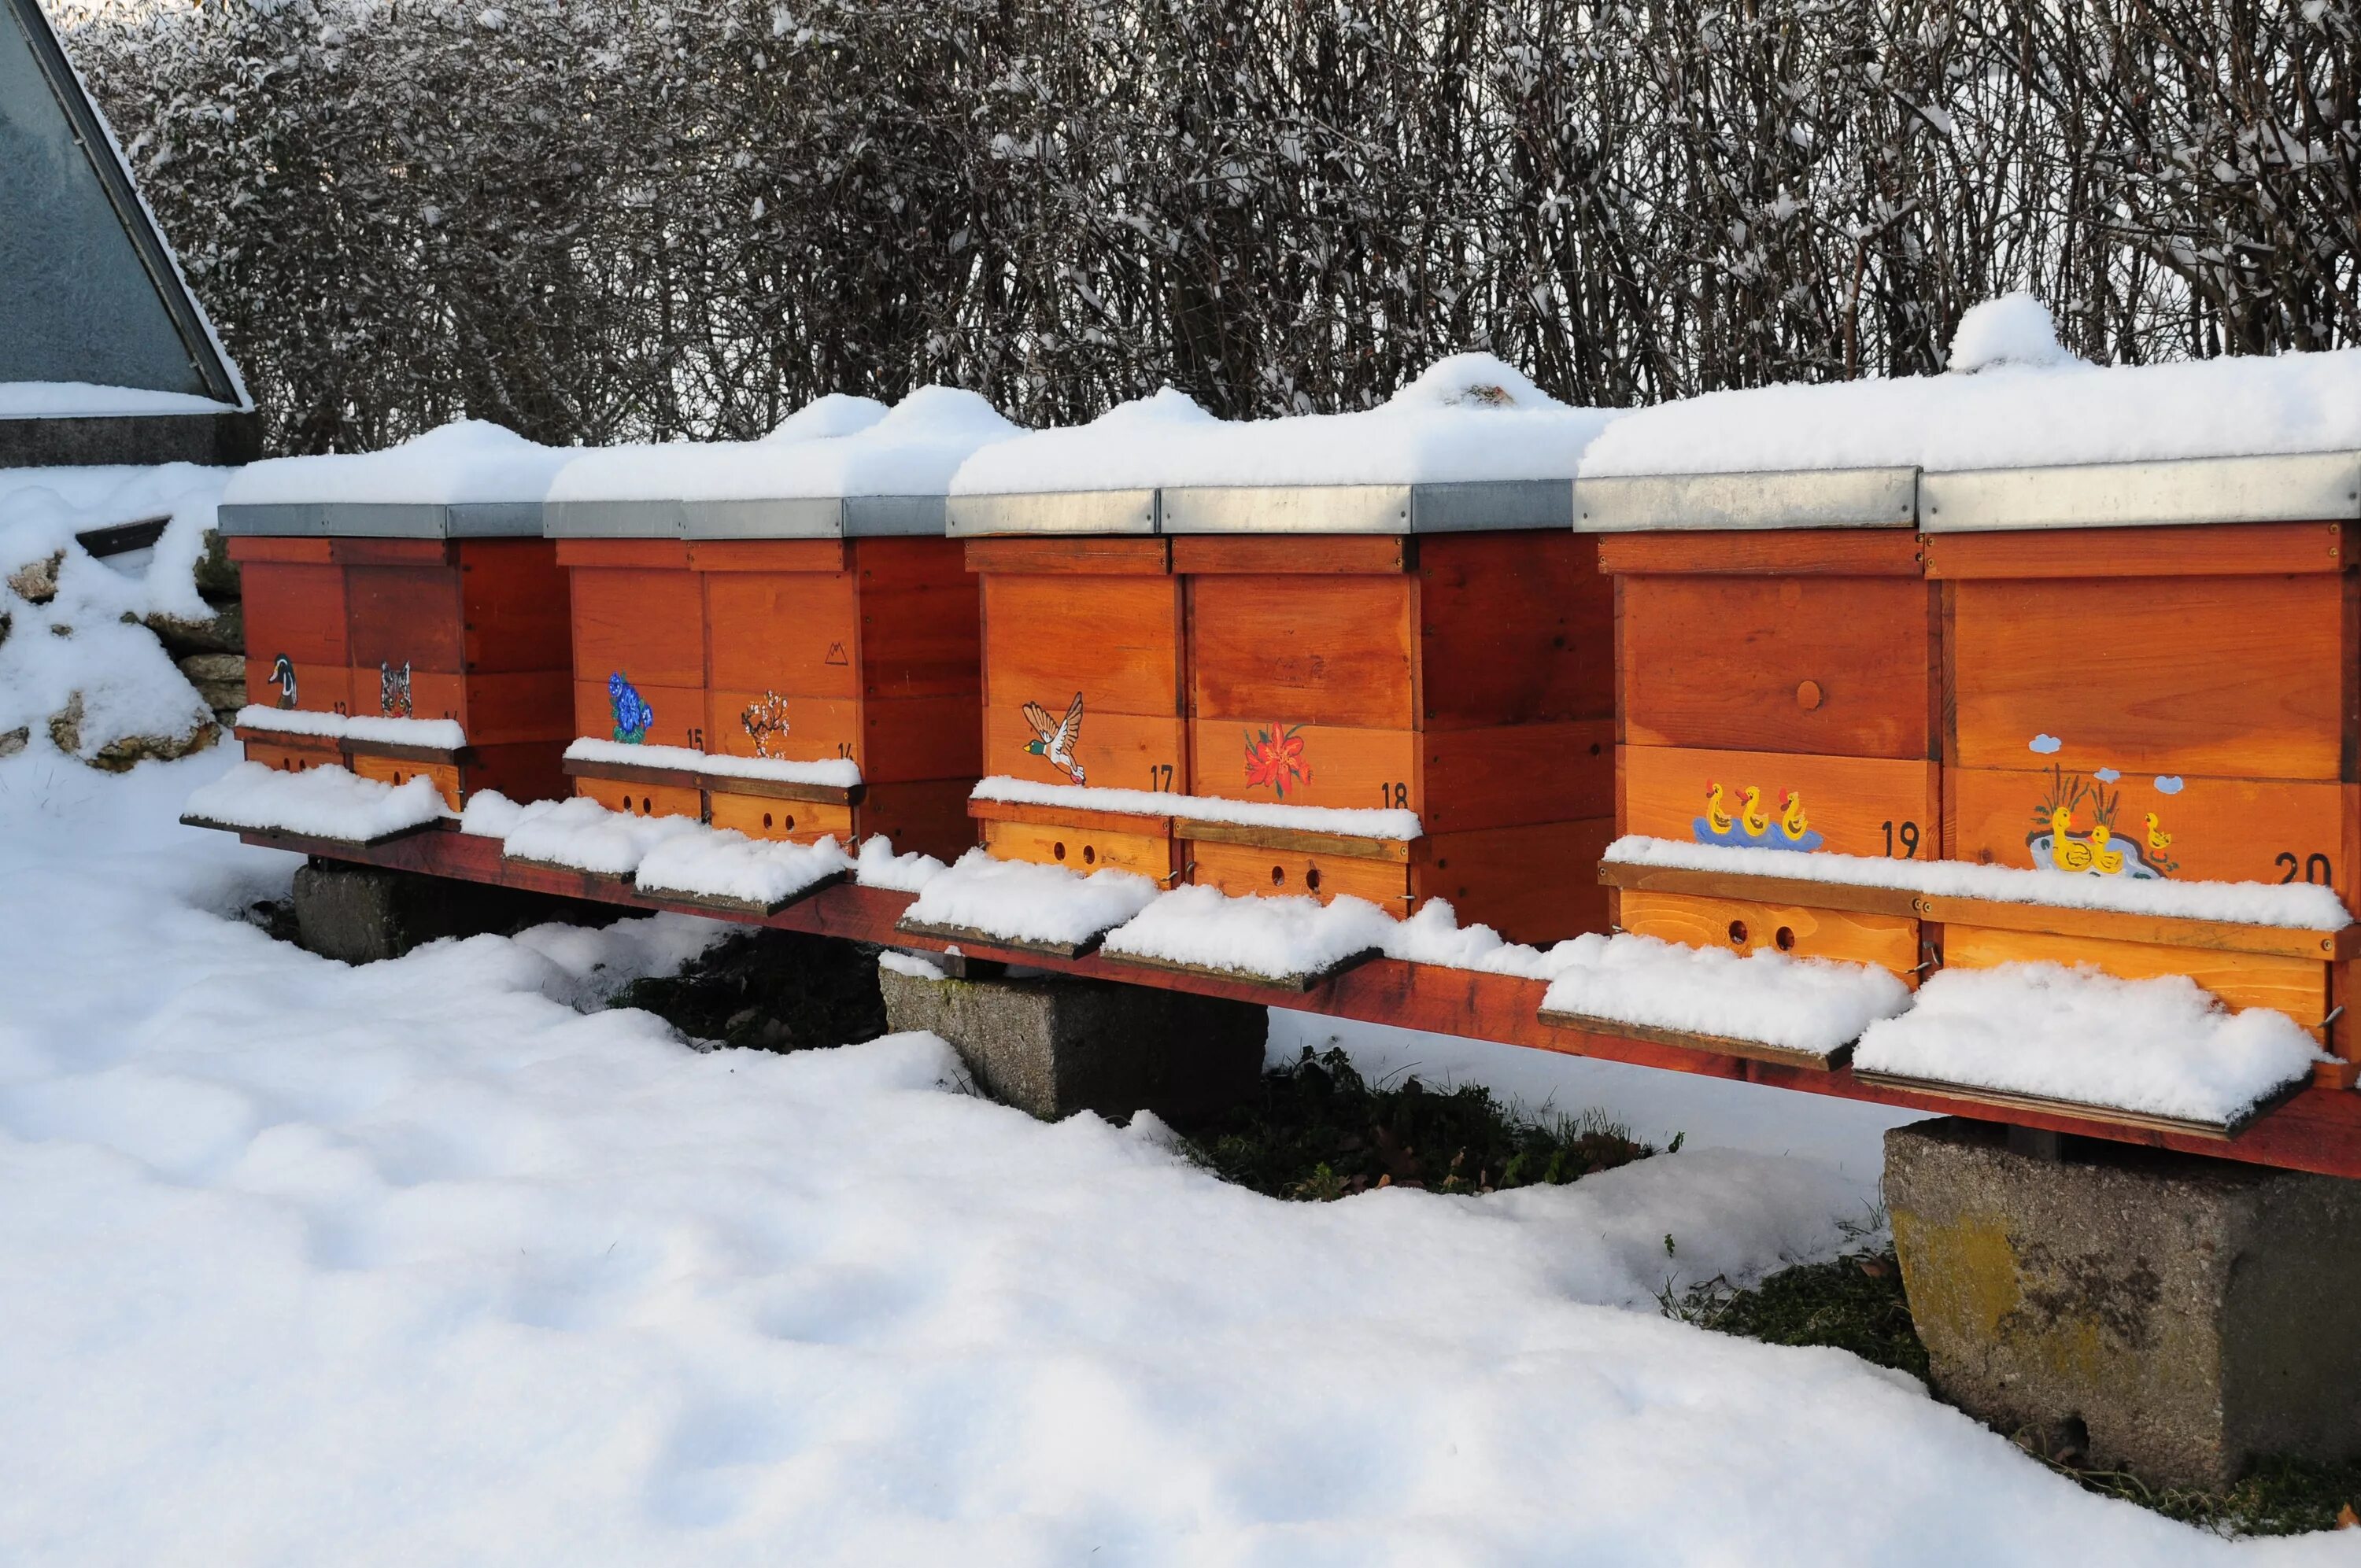 Температура улья пчел. Пчеловодство зимовка пчел в многокорпусном улье. Улей зимой. Пчелы зимой. Пчелы в улье зимой.